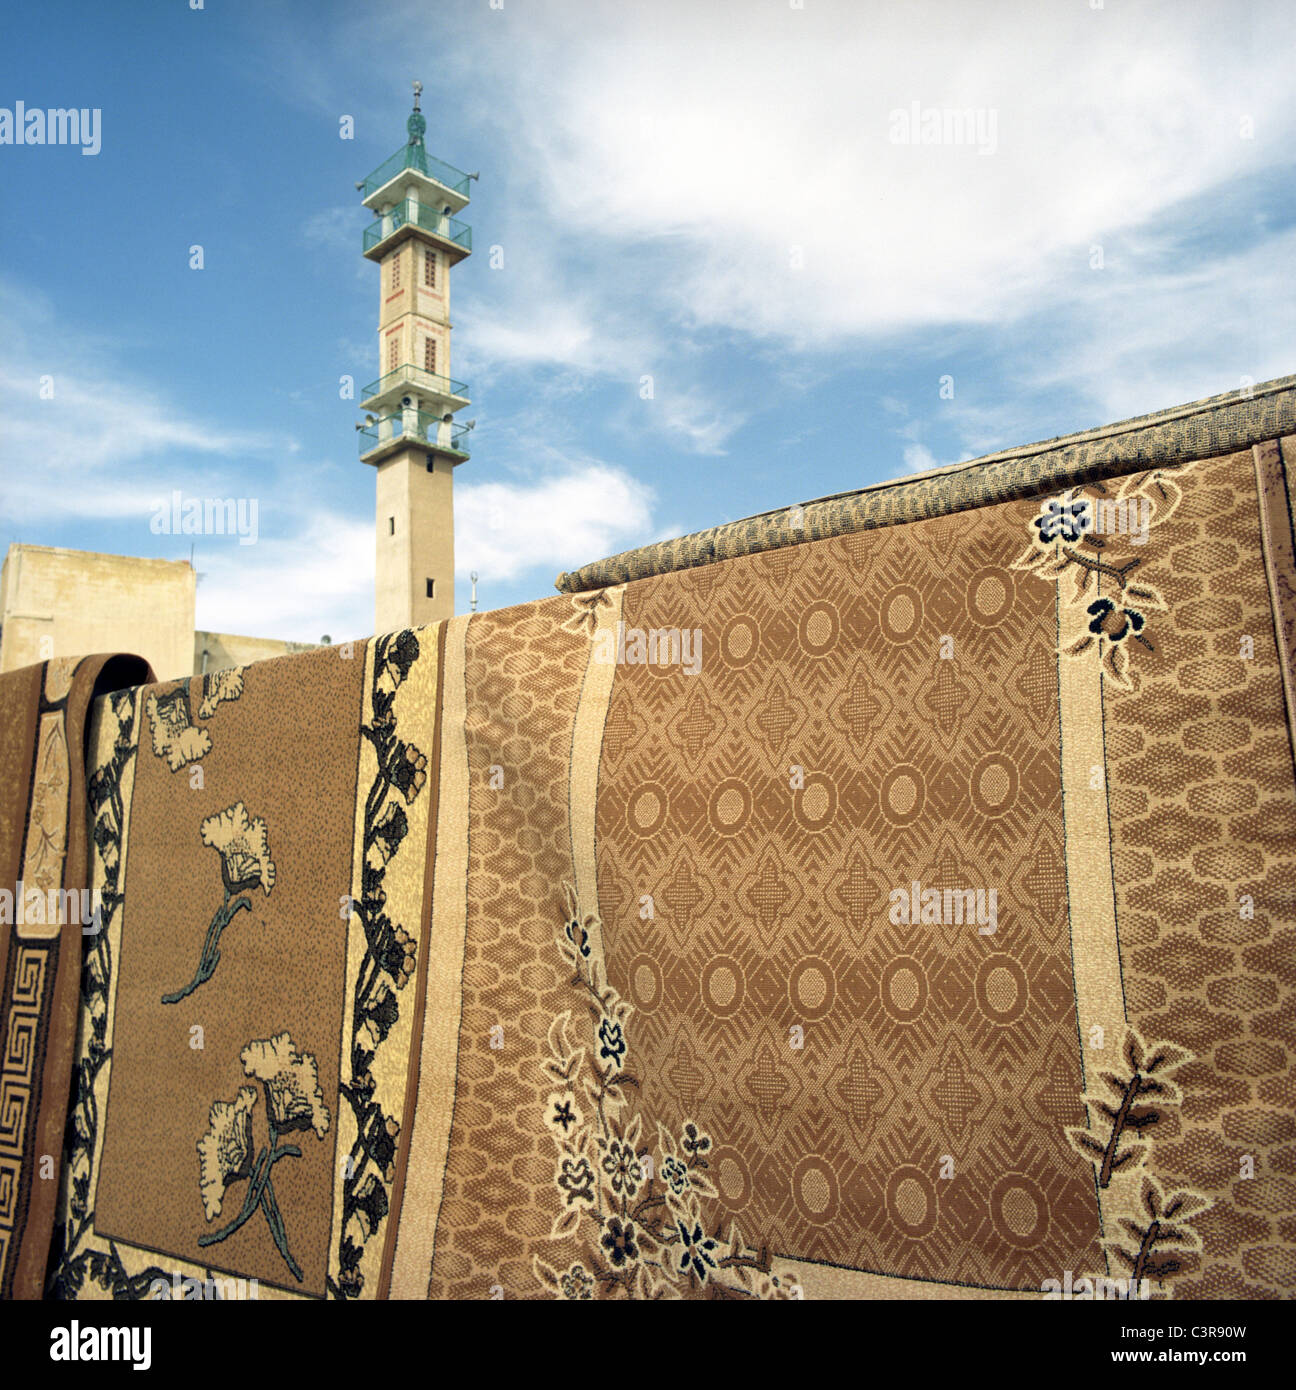 Giordania, Amman, tappeti tradizionali con minareto in background Foto Stock